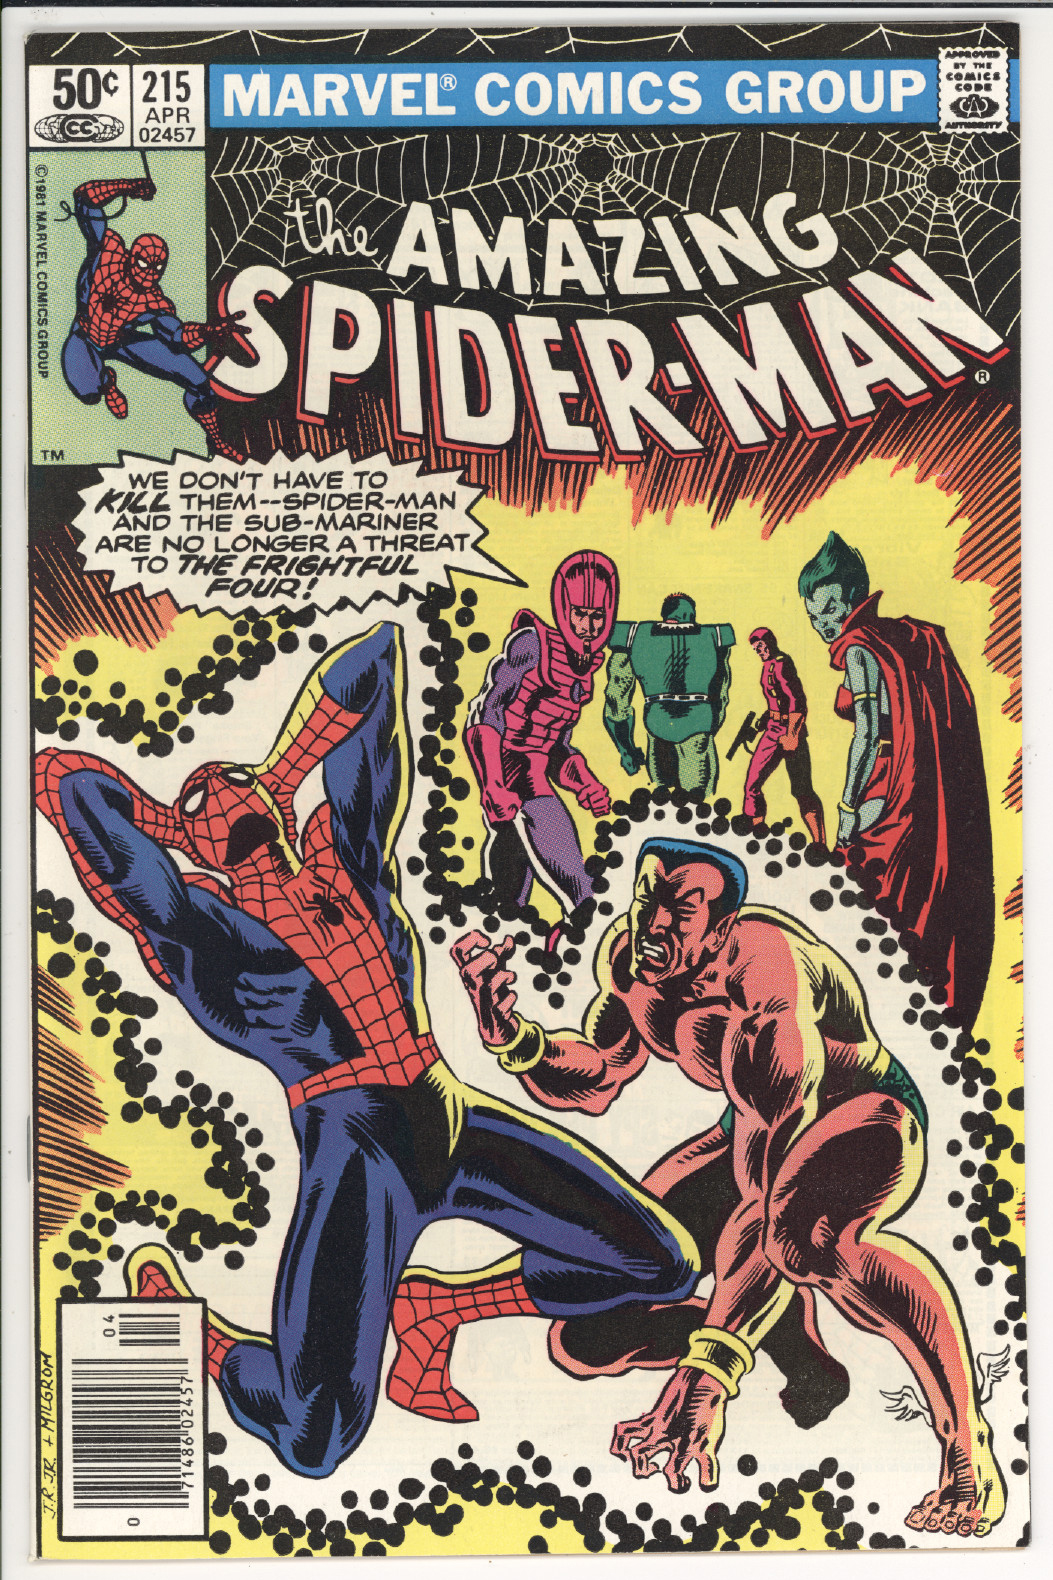 Amazing Spider-Man #215